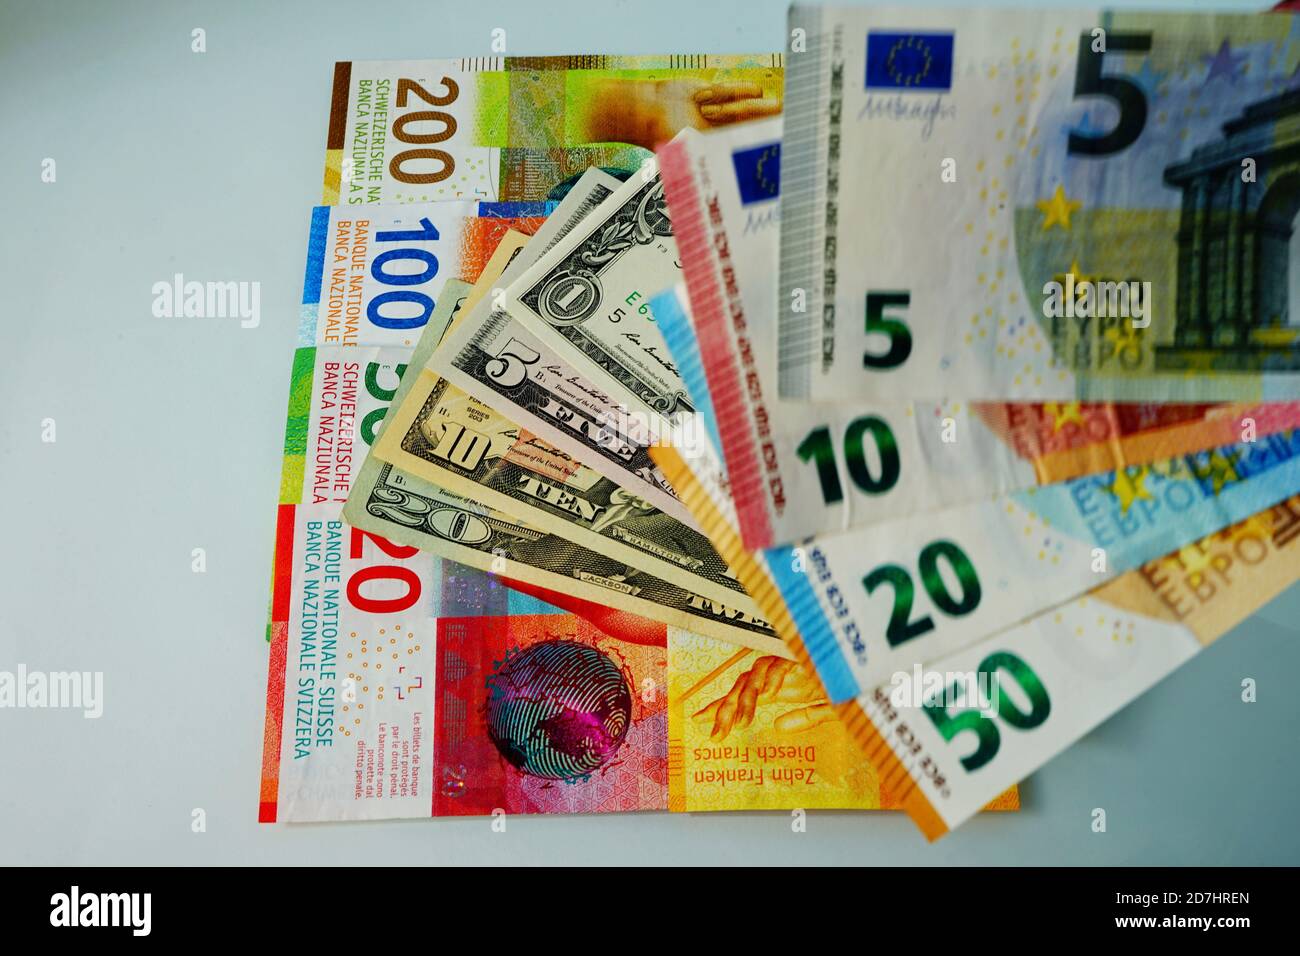 Geld - verschiedene Währungen - Geld aus den USA, der EU und der Schweiz. Money - Different currency - money from USA, EU and Switzerland - USD, EURO, Stock Photo